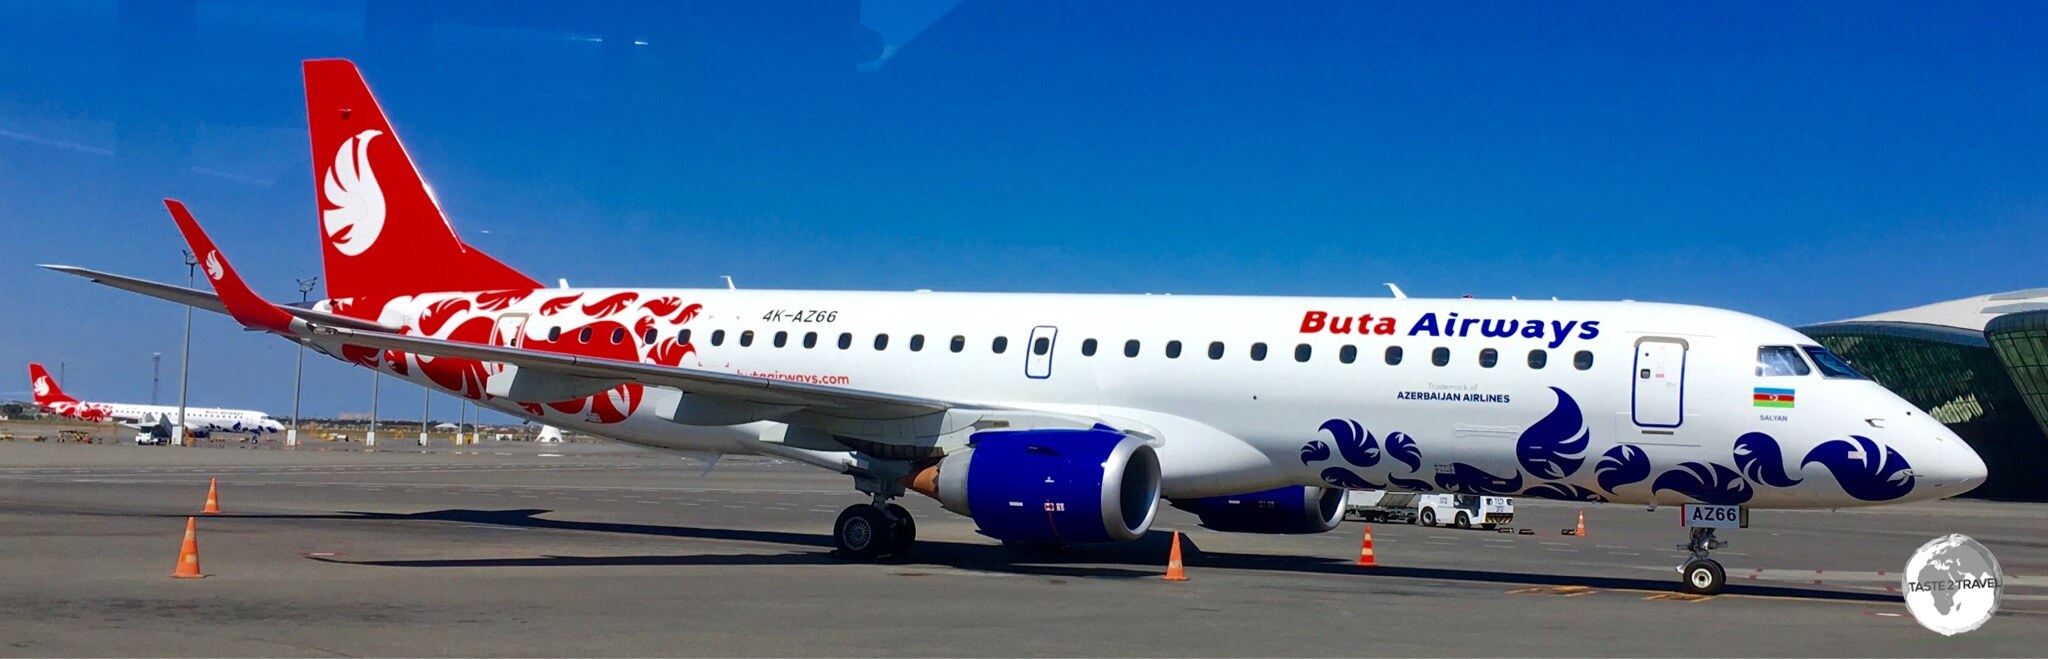 Buta Airways at Heydar Aliyev International Airport.